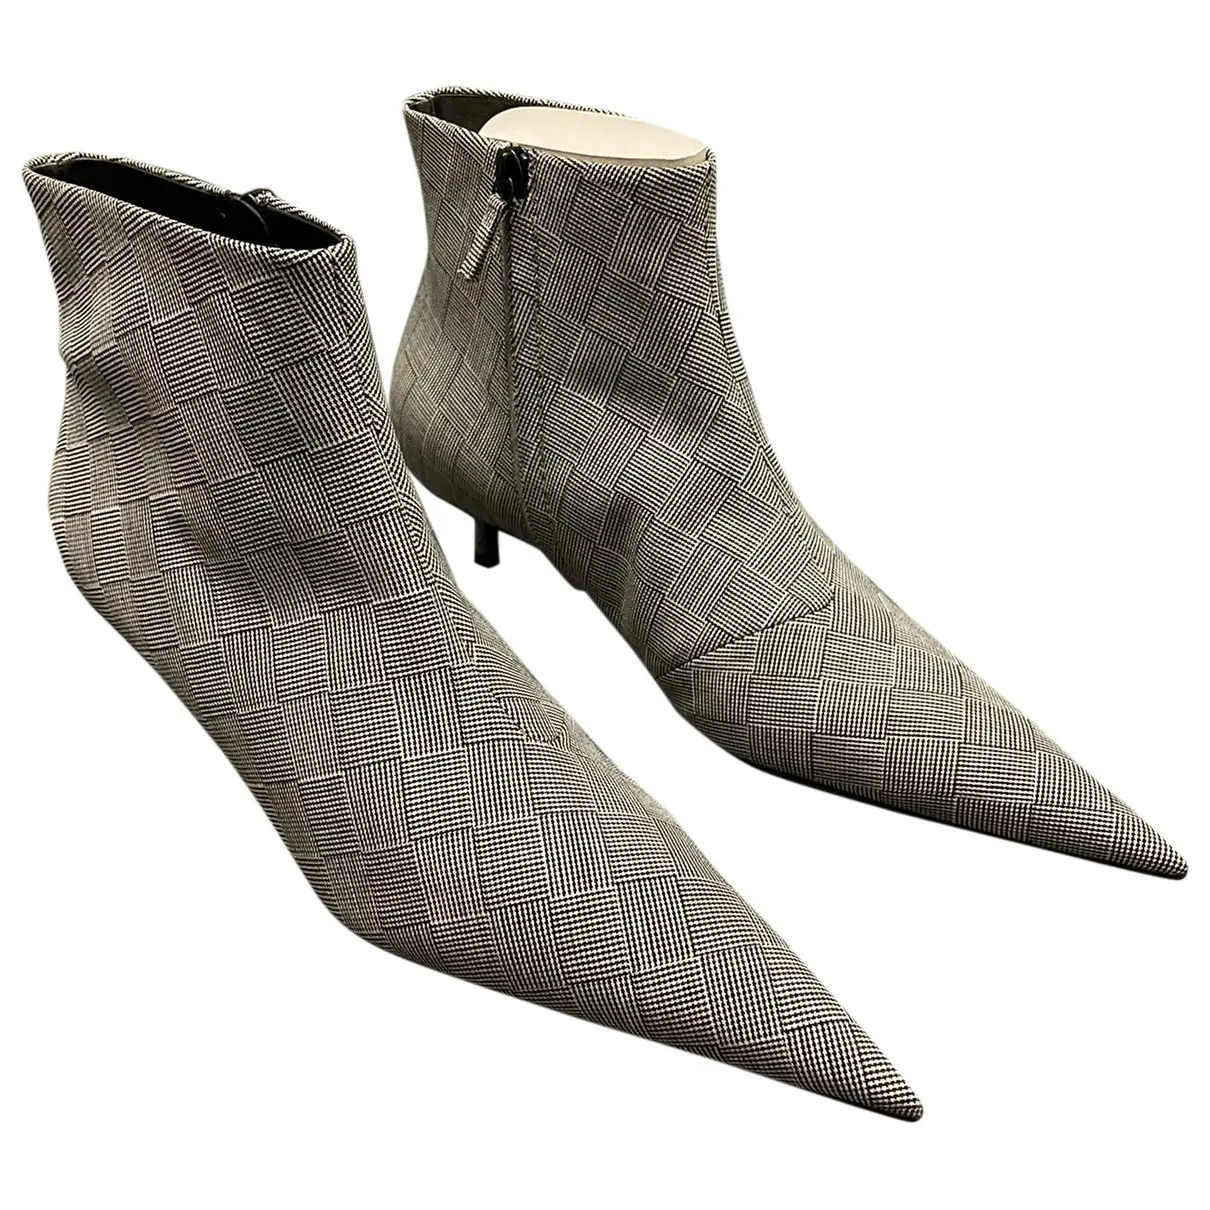 Cloth ankle boots Balenciaga